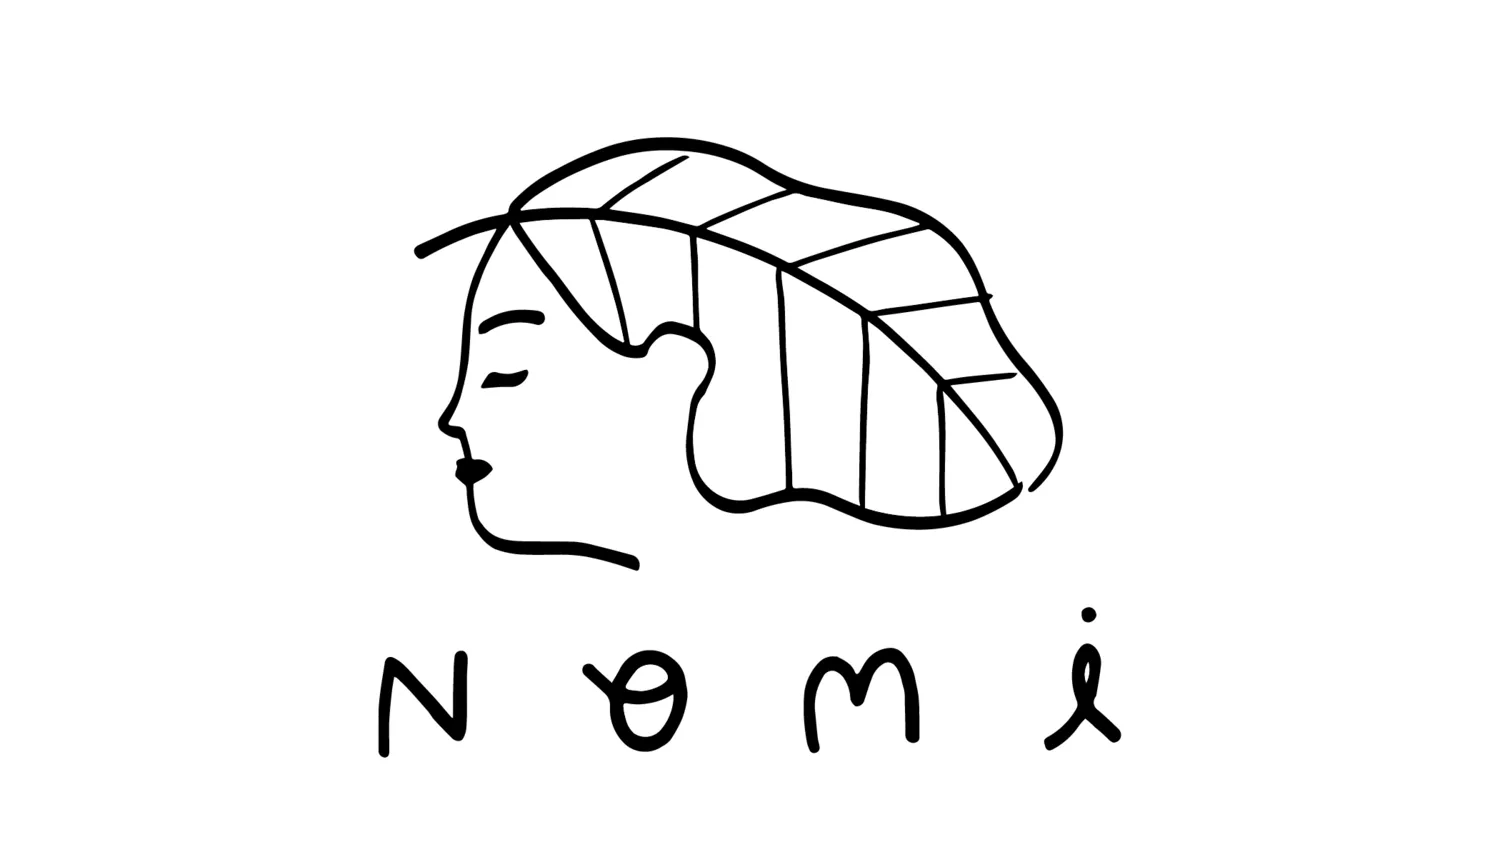 Nomi Designs